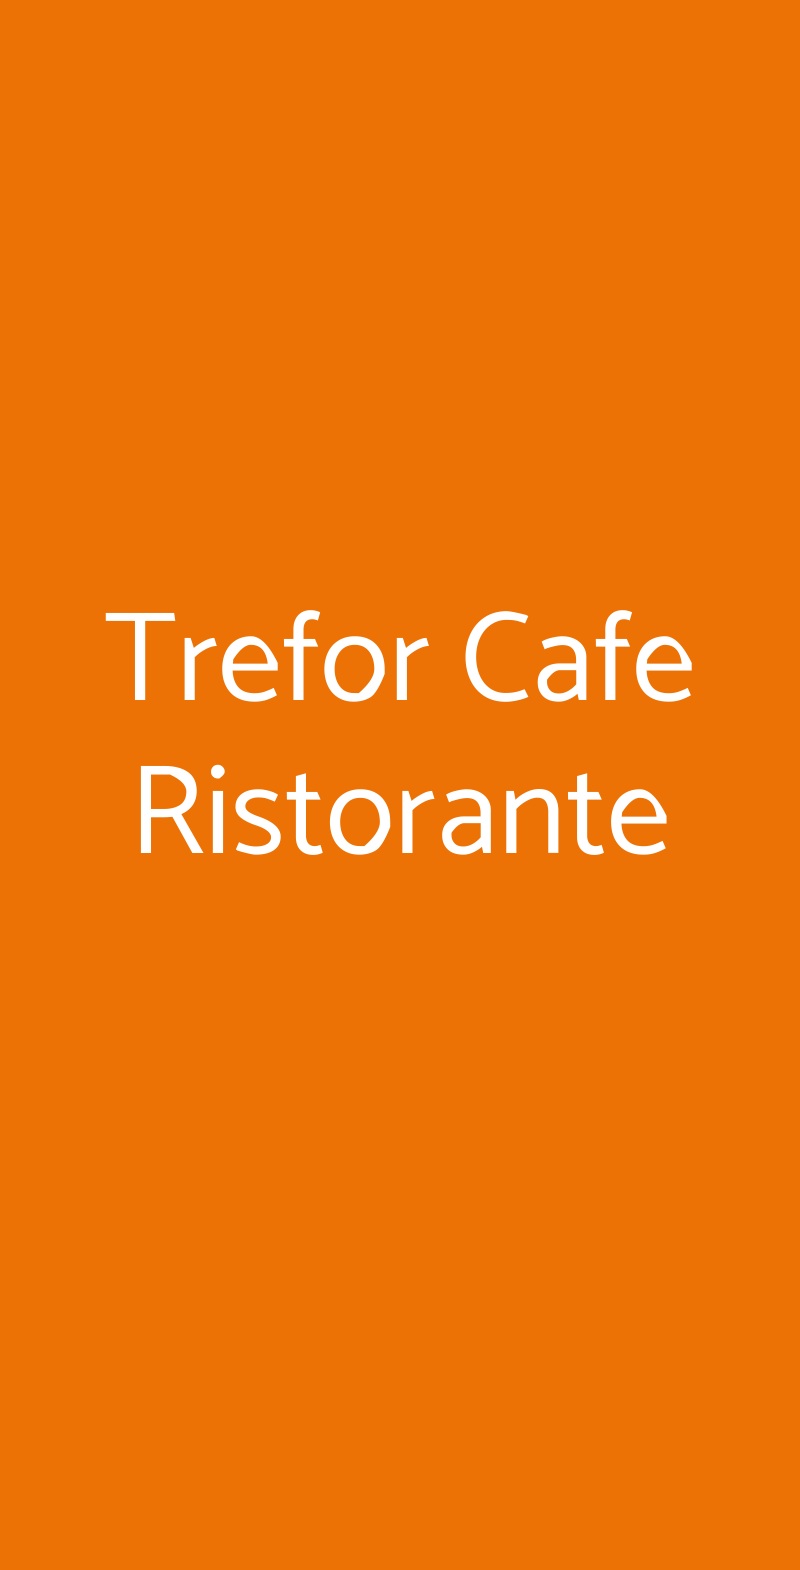 Trefor Cafe Ristorante San Donato Milanese menù 1 pagina